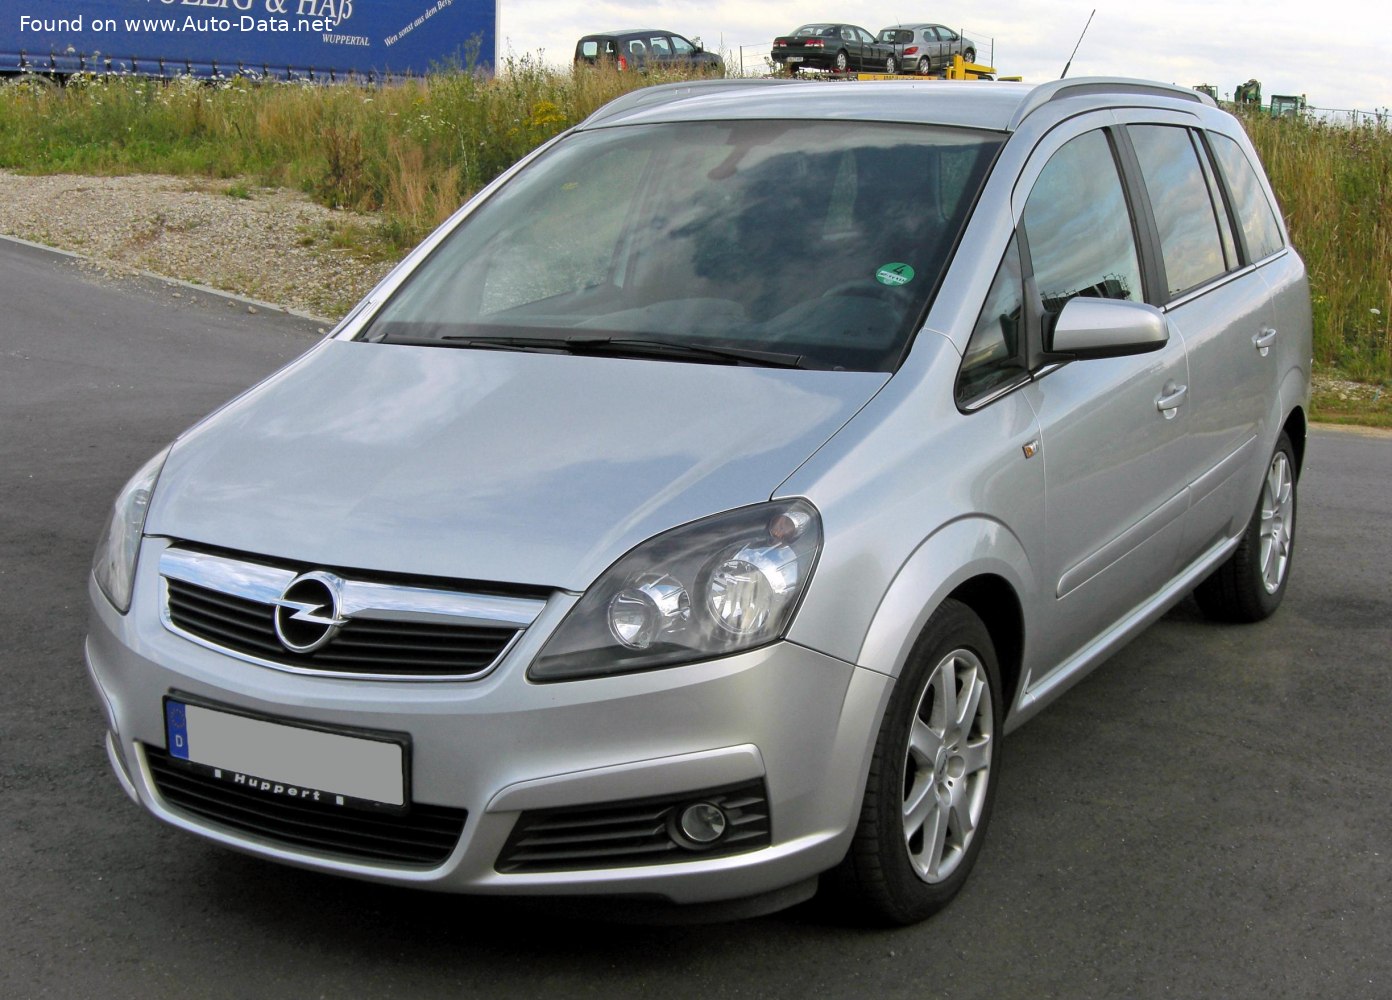 2006 Opel Zafira B  Technical Specs, Fuel consumption, Dimensions